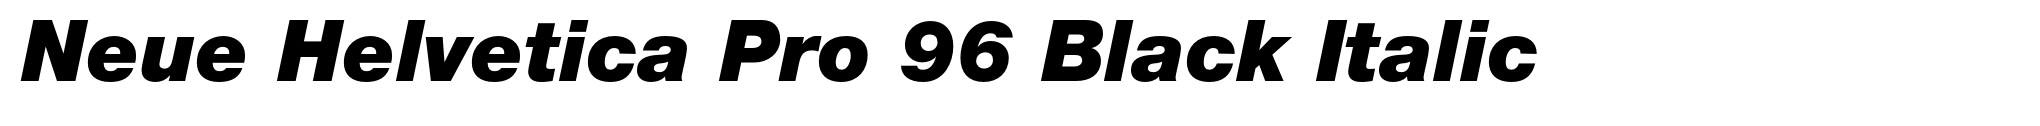 Neue Helvetica Pro 96 Black Italic image